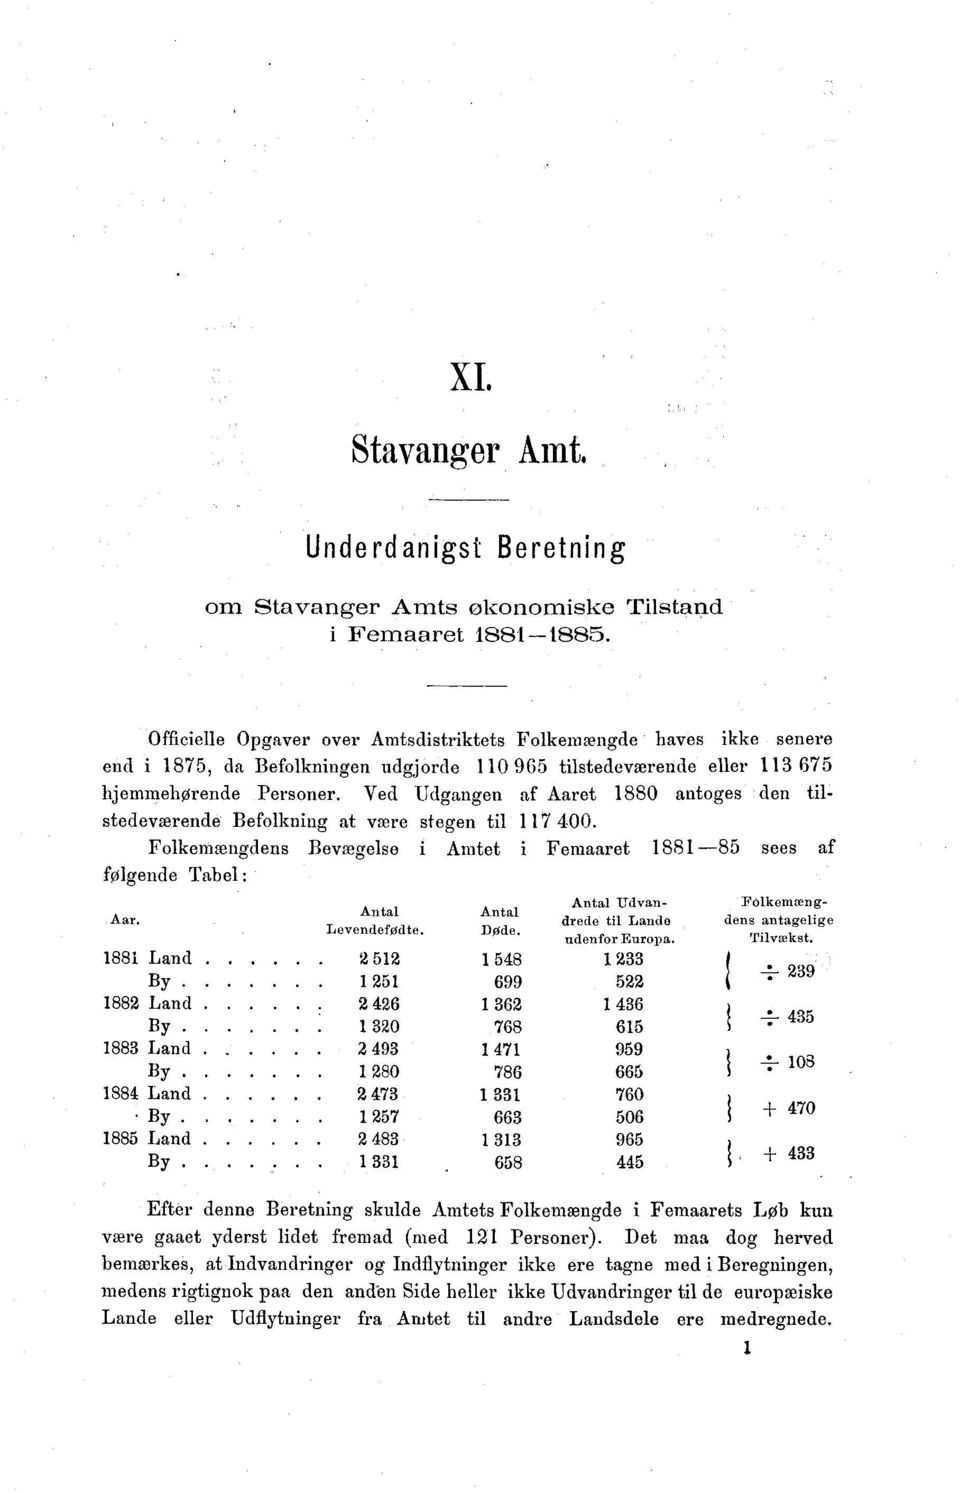 Ved Udgangen af Aaret 1880 antoges den tilstedeværende Befolkning at være stegen til 117 400.